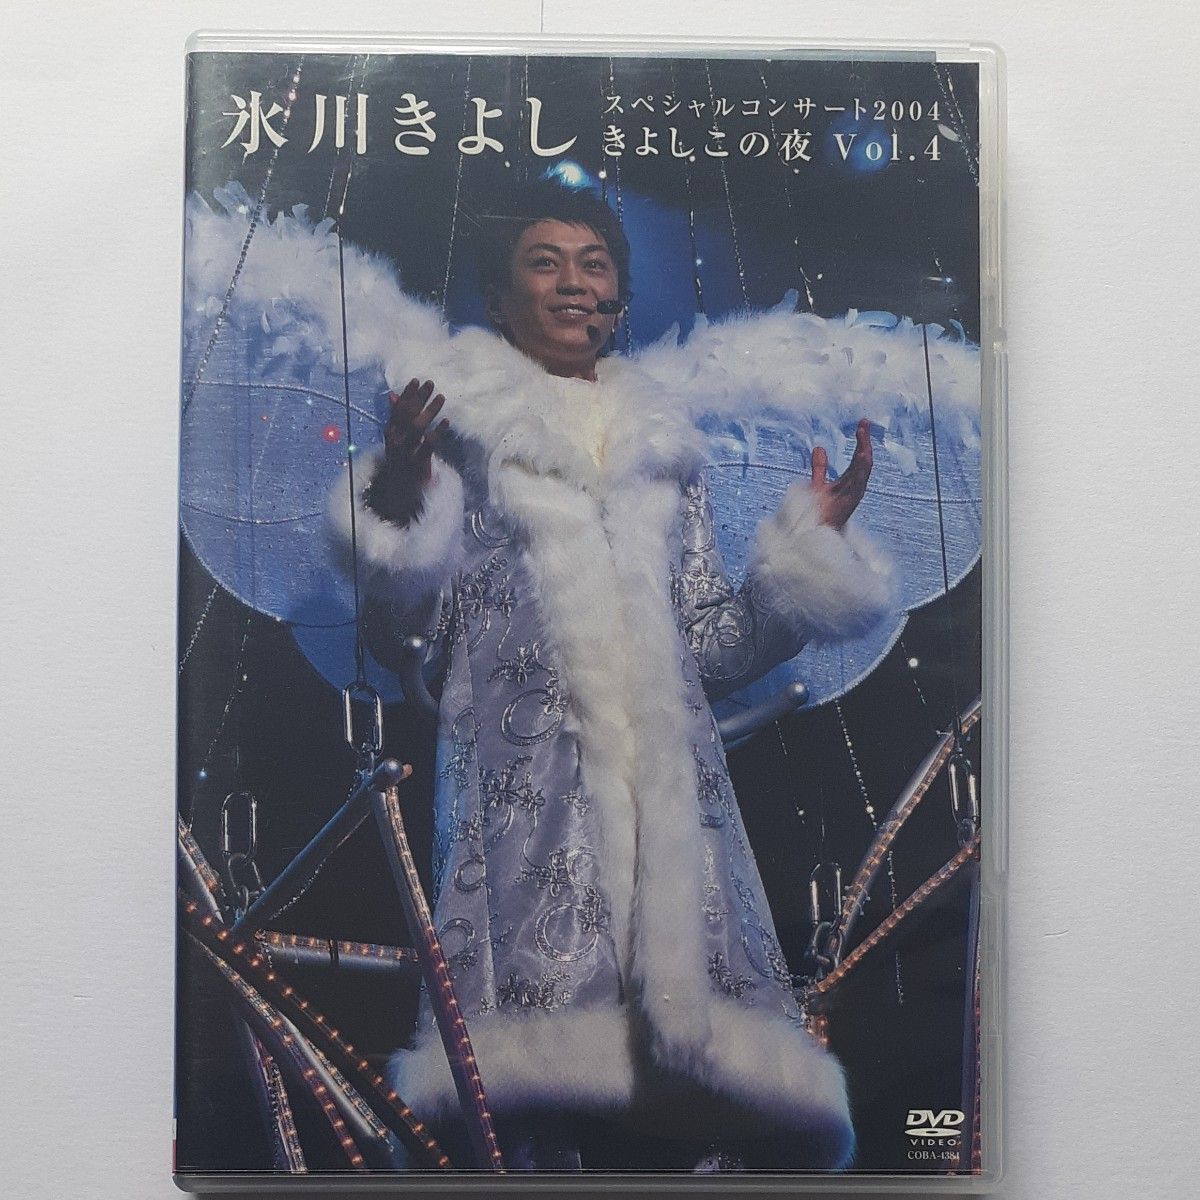 氷川きよし スペシャルコンサート“きよしこの夜 Vol.4 [DVD]